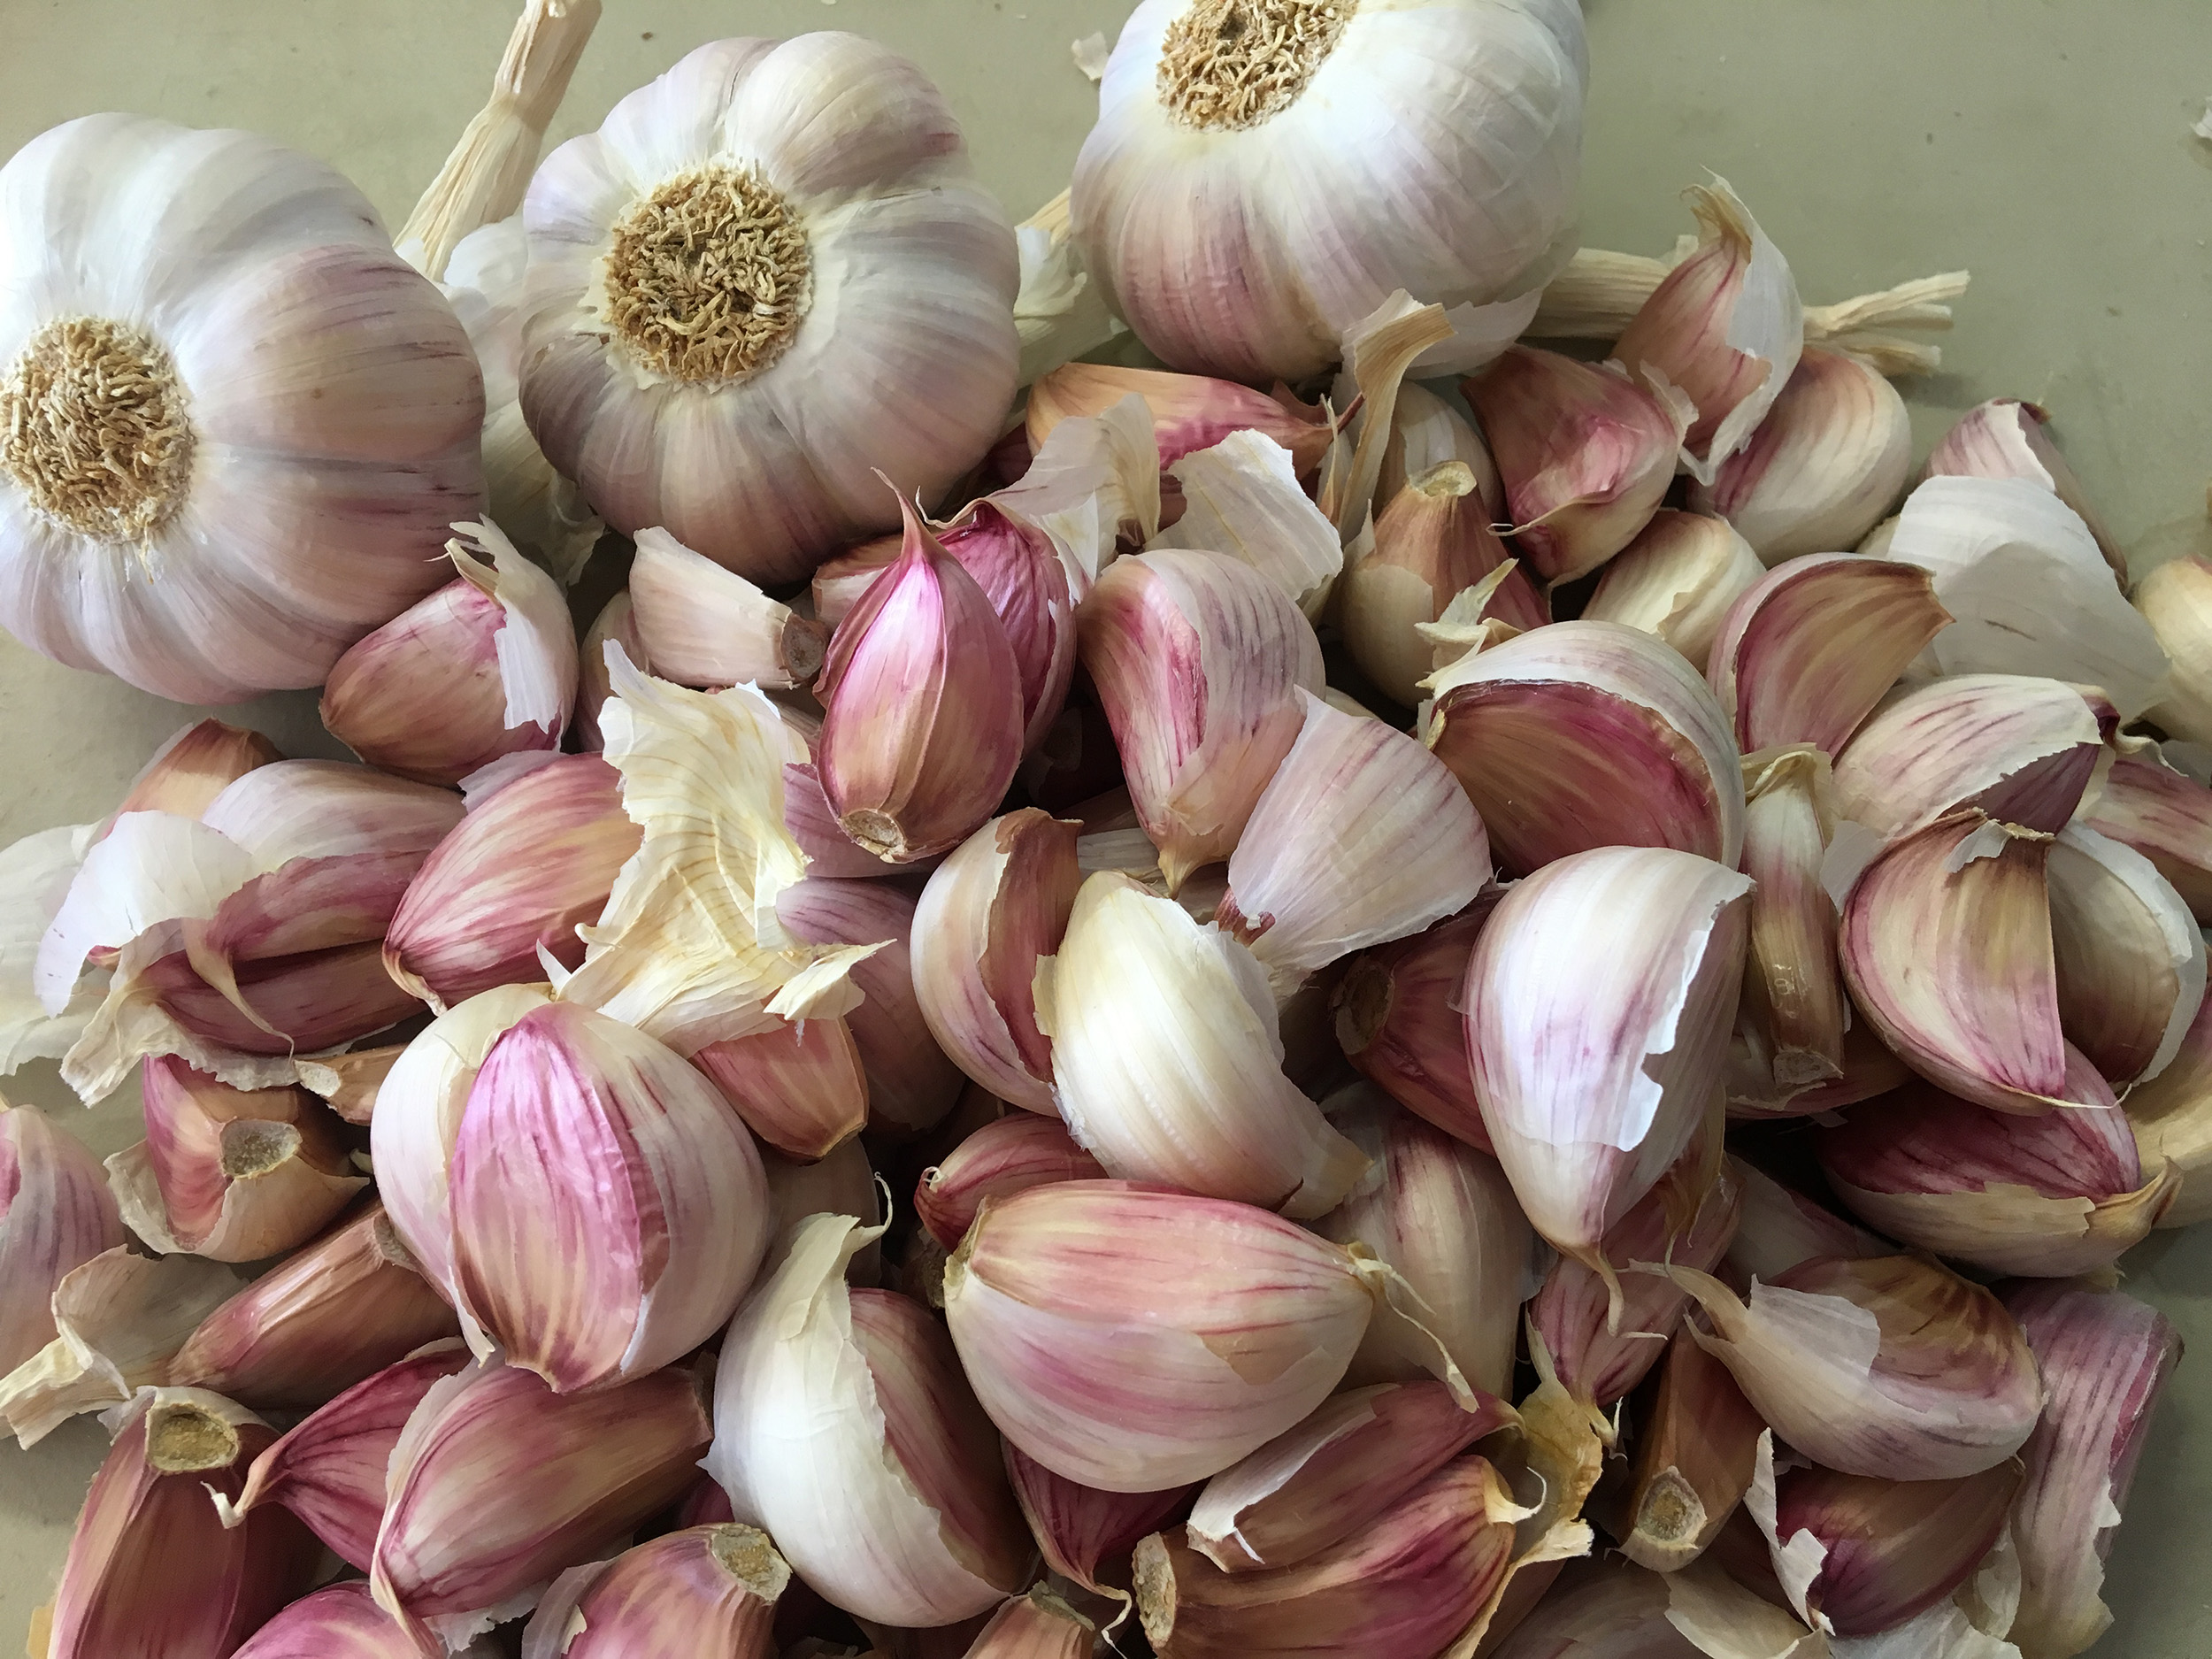 Organic Everything Bagel Seasoning - Keene Garlic